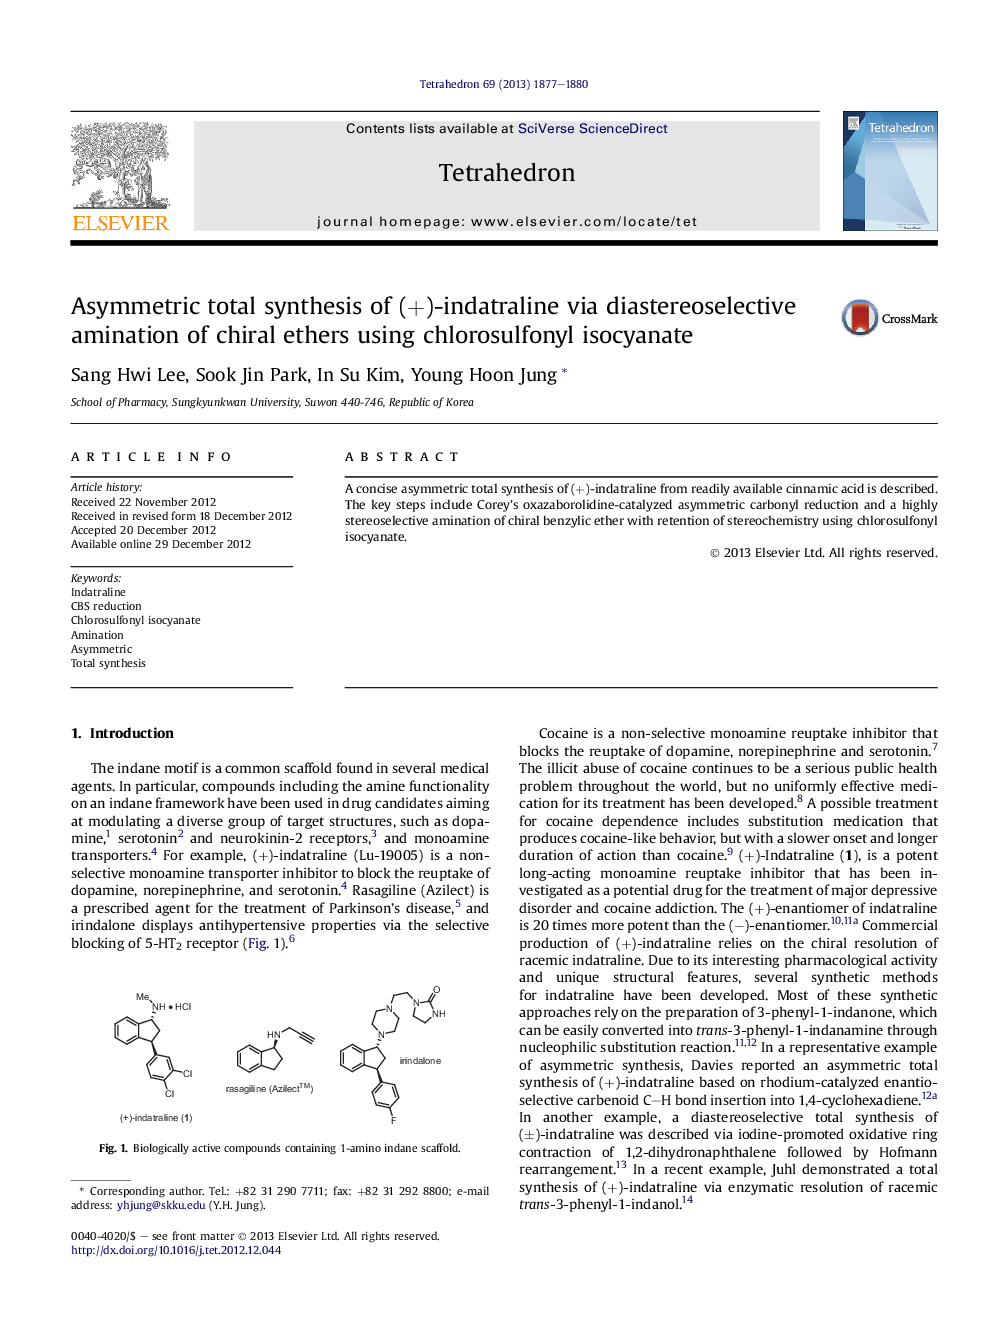 سنتز کامل نامتقارن (+) - ویتاتارین از طریق آمینسیون دیاستروئیدی سلول های ایکر چربی با استفاده از کلرزوفونیل ایزوسیانات 